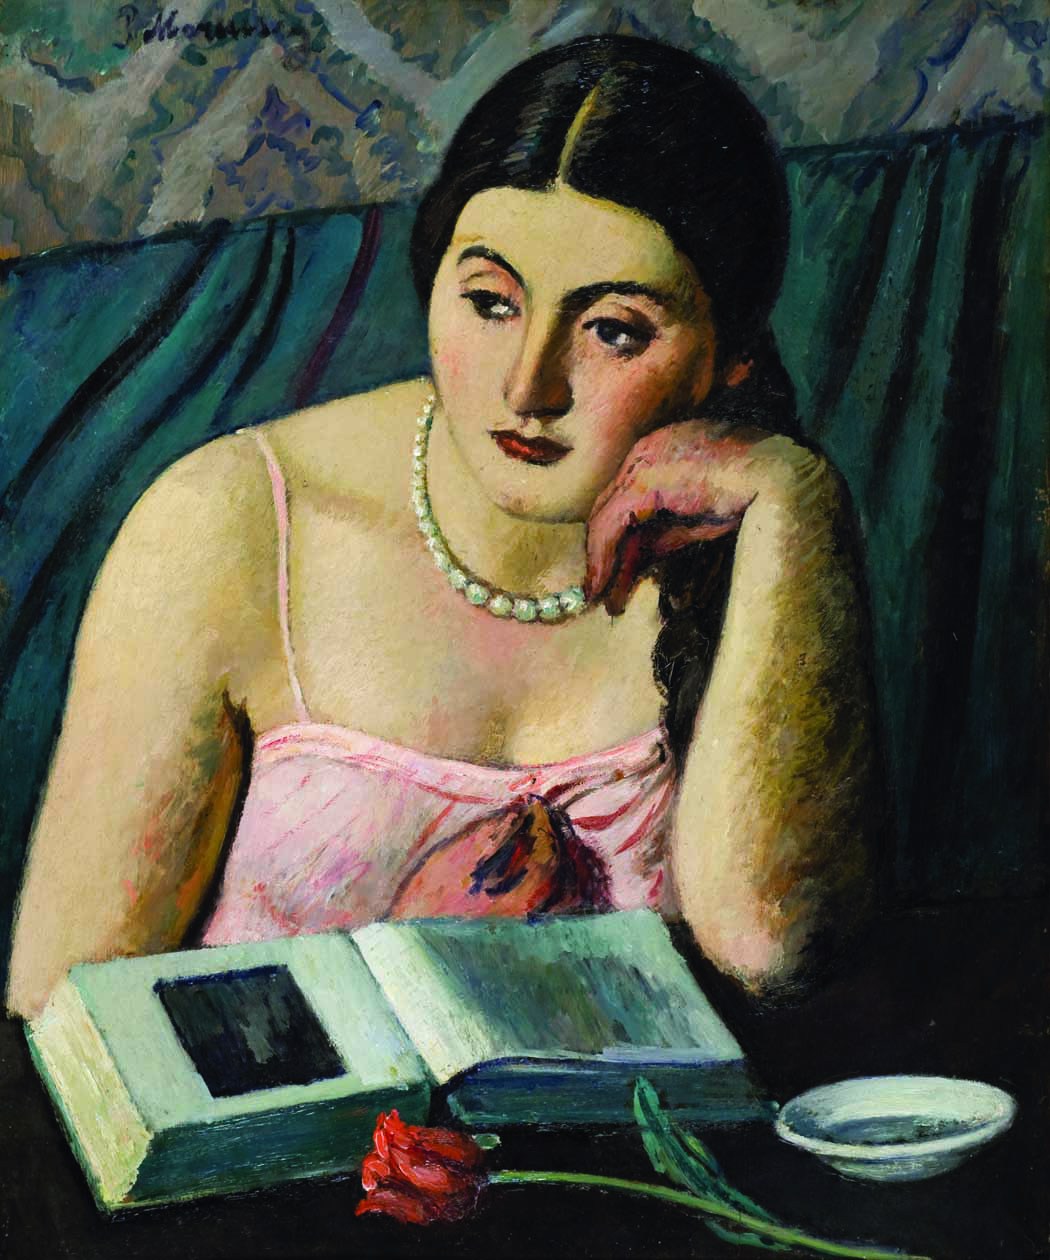 Piero Marussig. Ragazza con la rosa (1928)